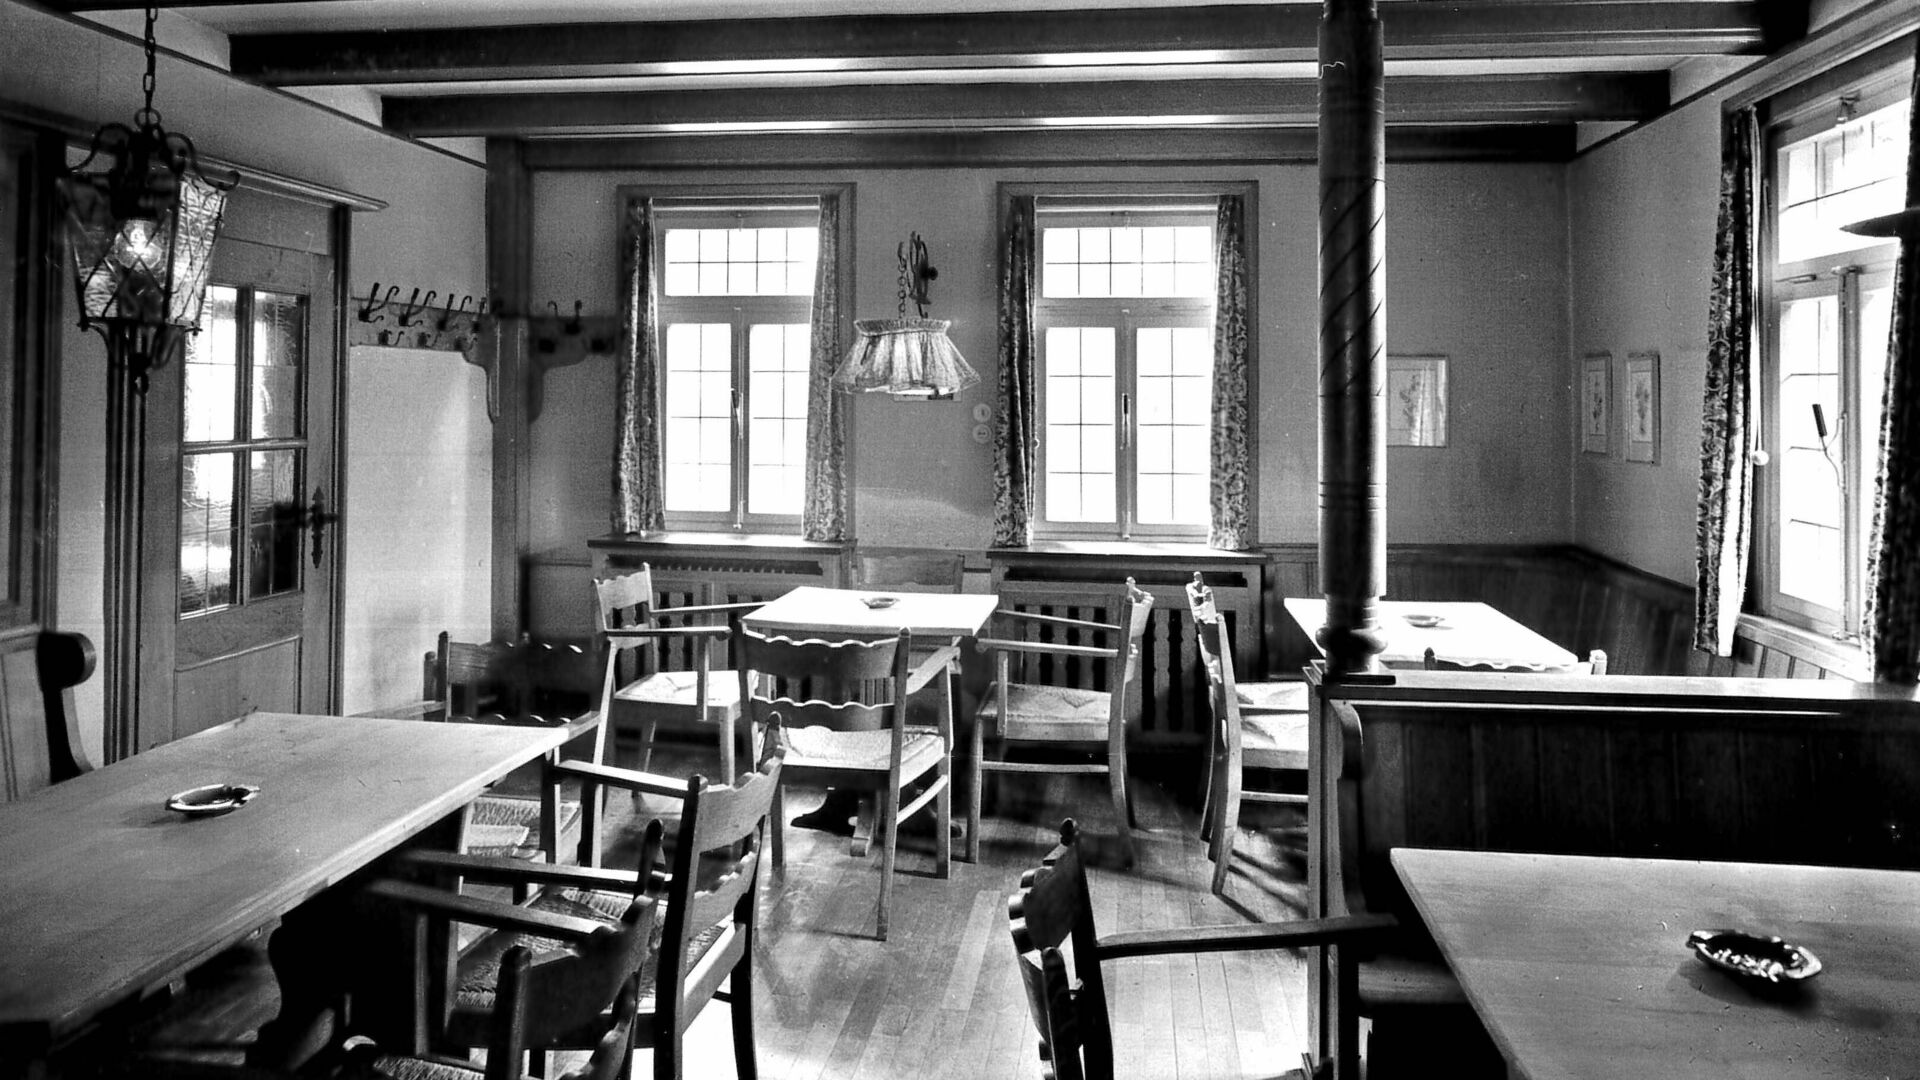 SRaum mit Fenstern, Bänken, Tischen und Stühlen, Gasthof, schwarz-weiß Fotografie